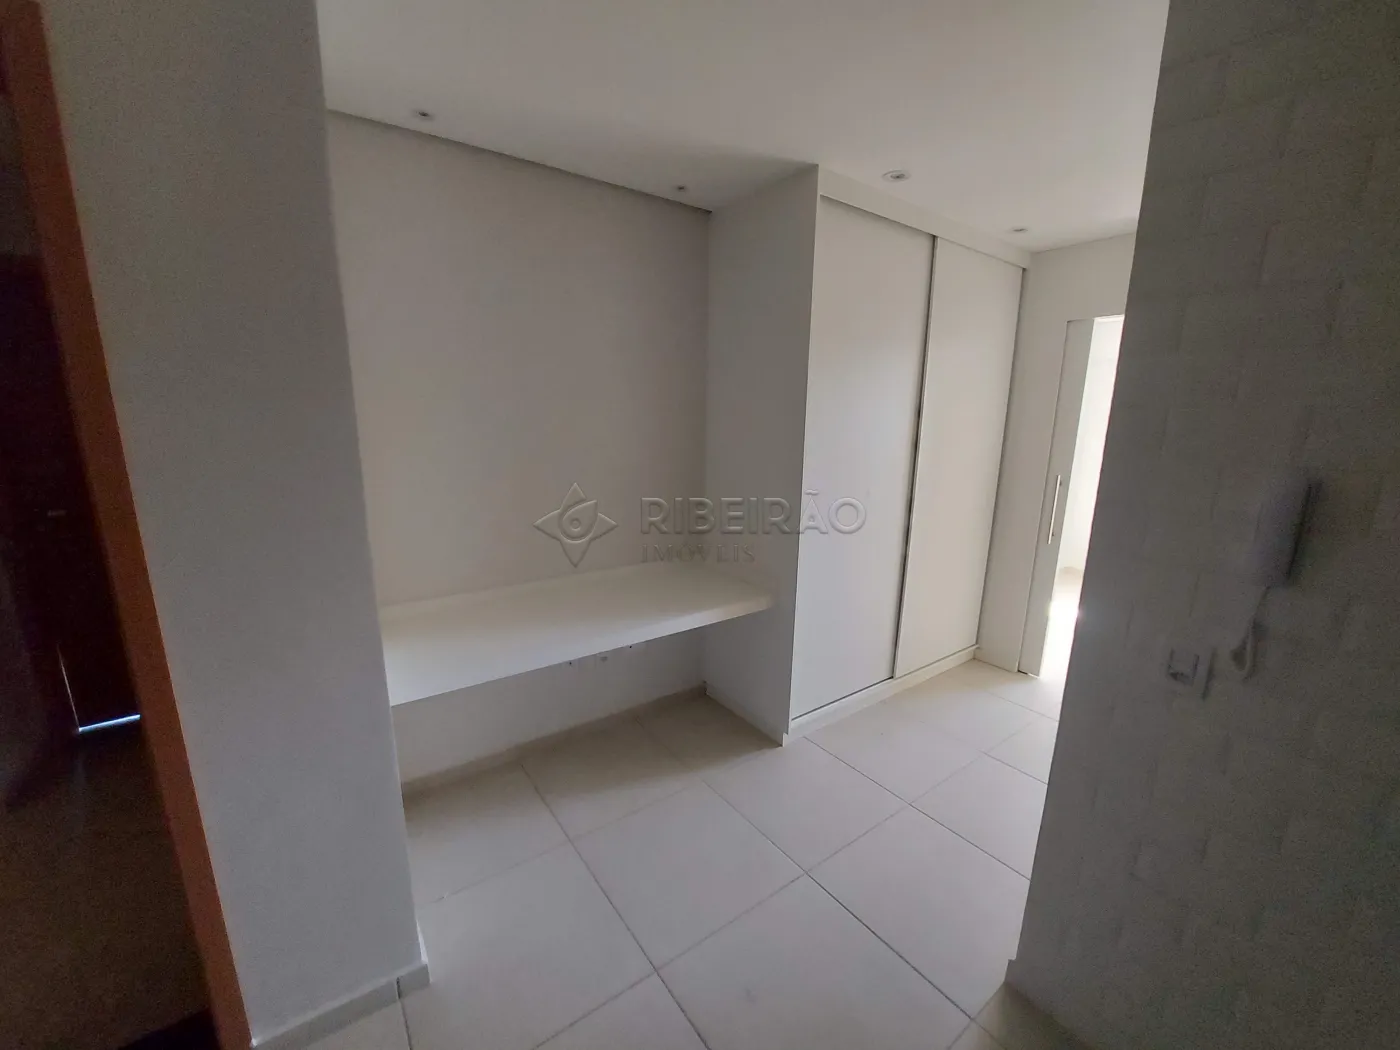 Alugar Apartamento / Flat / Loft / Kitnet em Ribeirão Preto R$ 1.500,00 - Foto 4